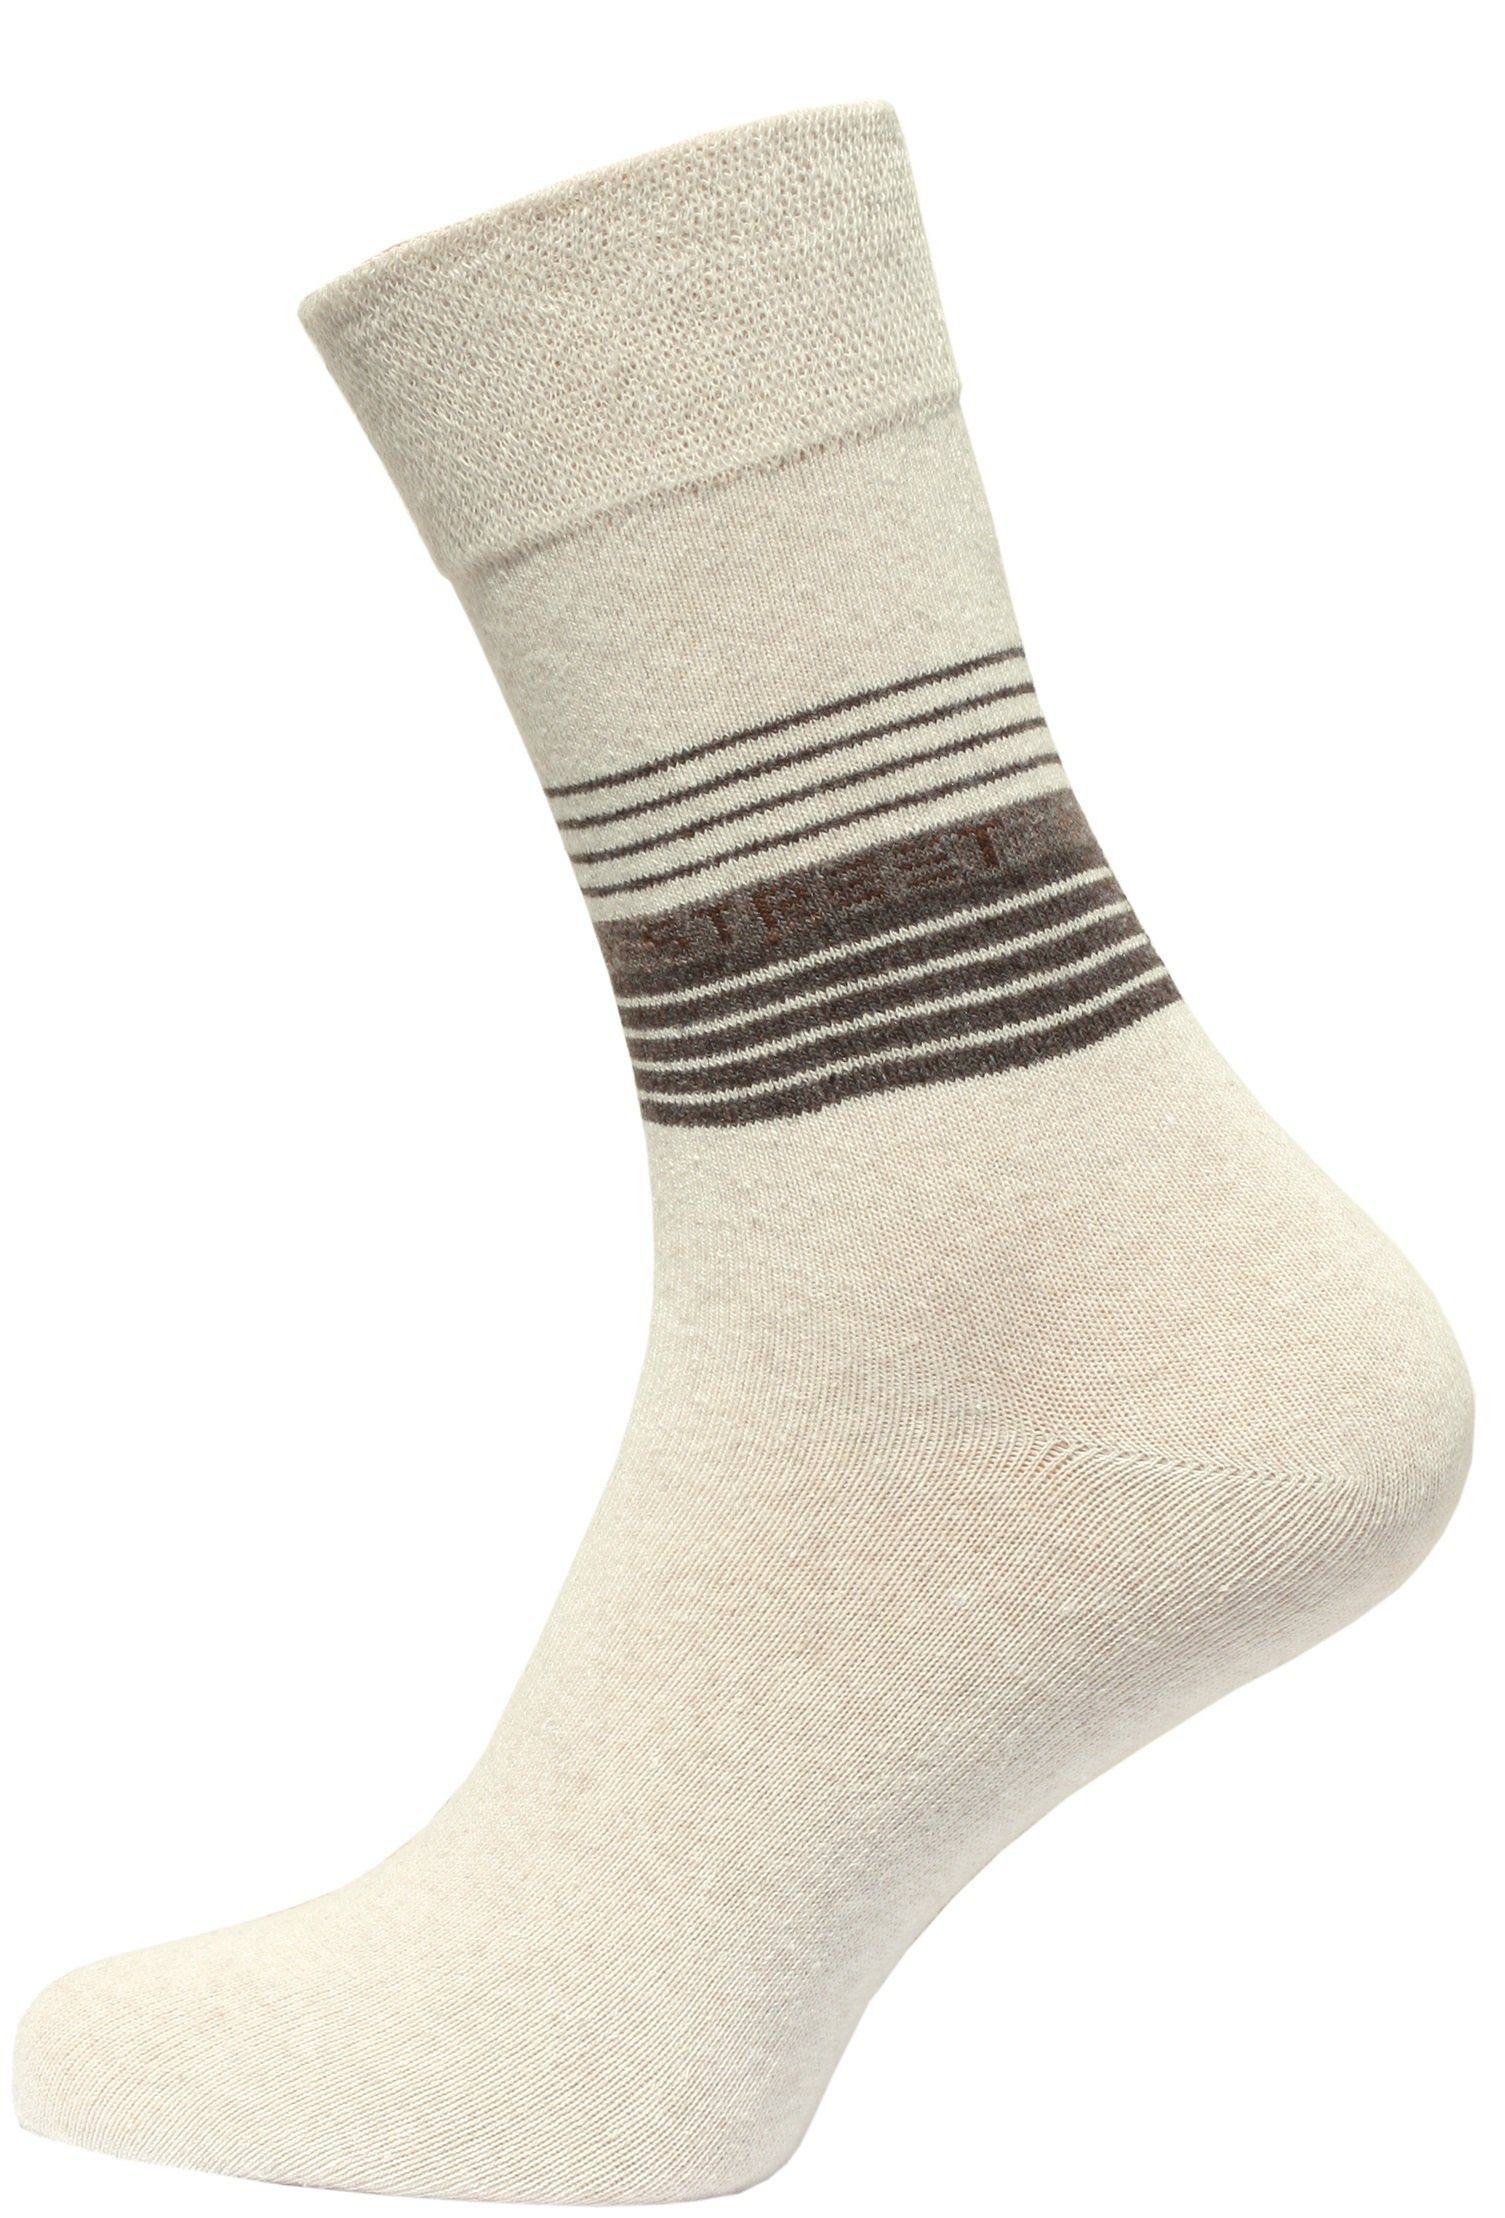 Cotton in Socken Baumwollqualität (10-Paar) angenehmer Prime®